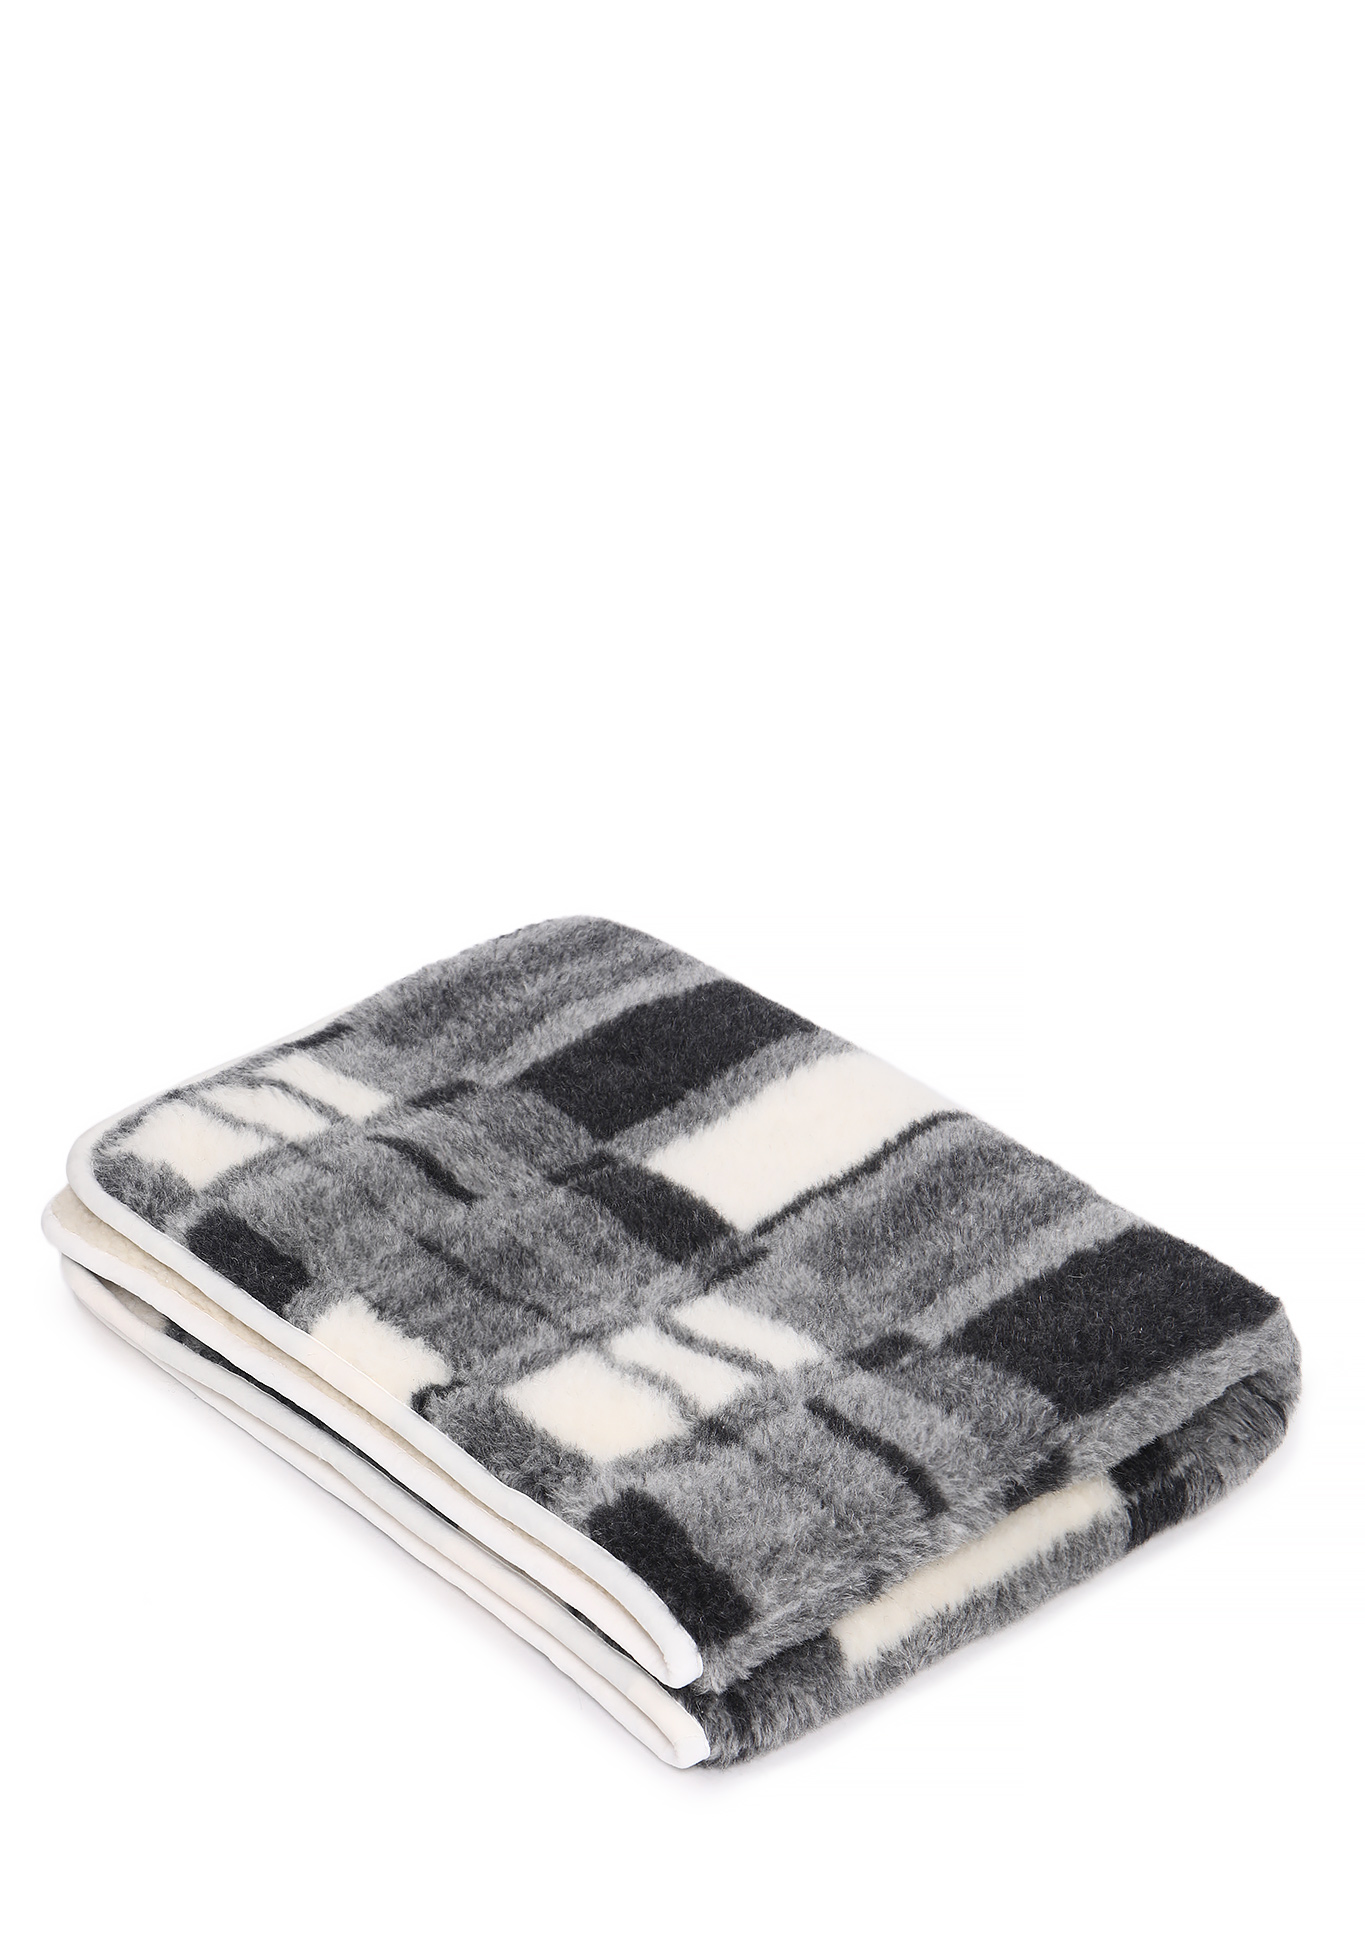 Одеяло из натуральной овечьей шерсти Alwero, цвет бело-серый, размер 100х140